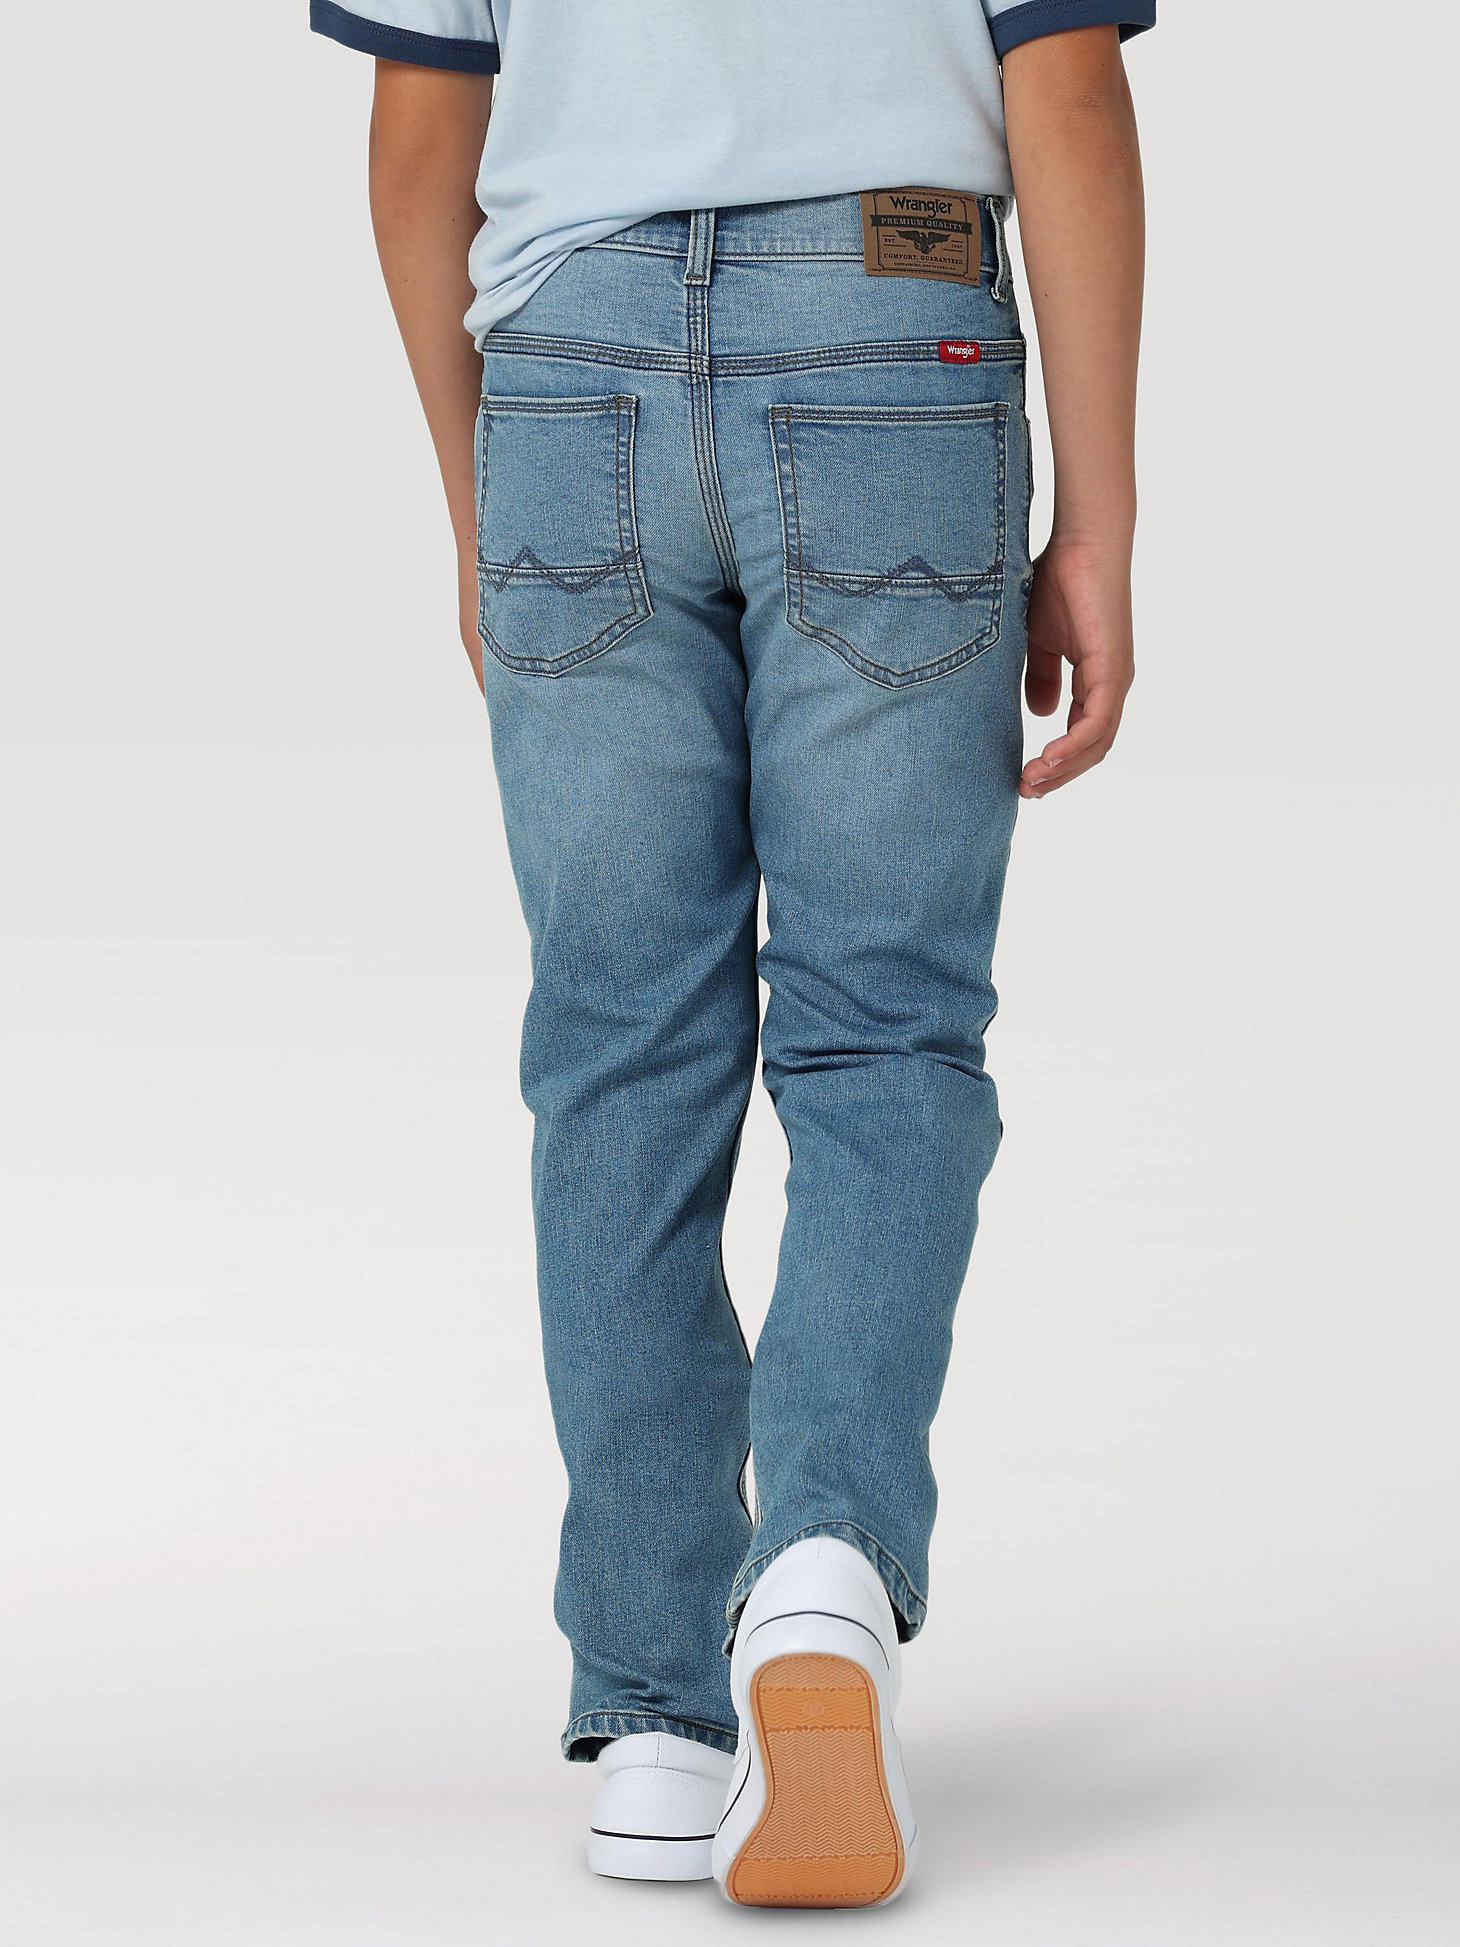 Boy's Indigood Slim Fit Jean (4-7) in Worn Blue alternative view 1